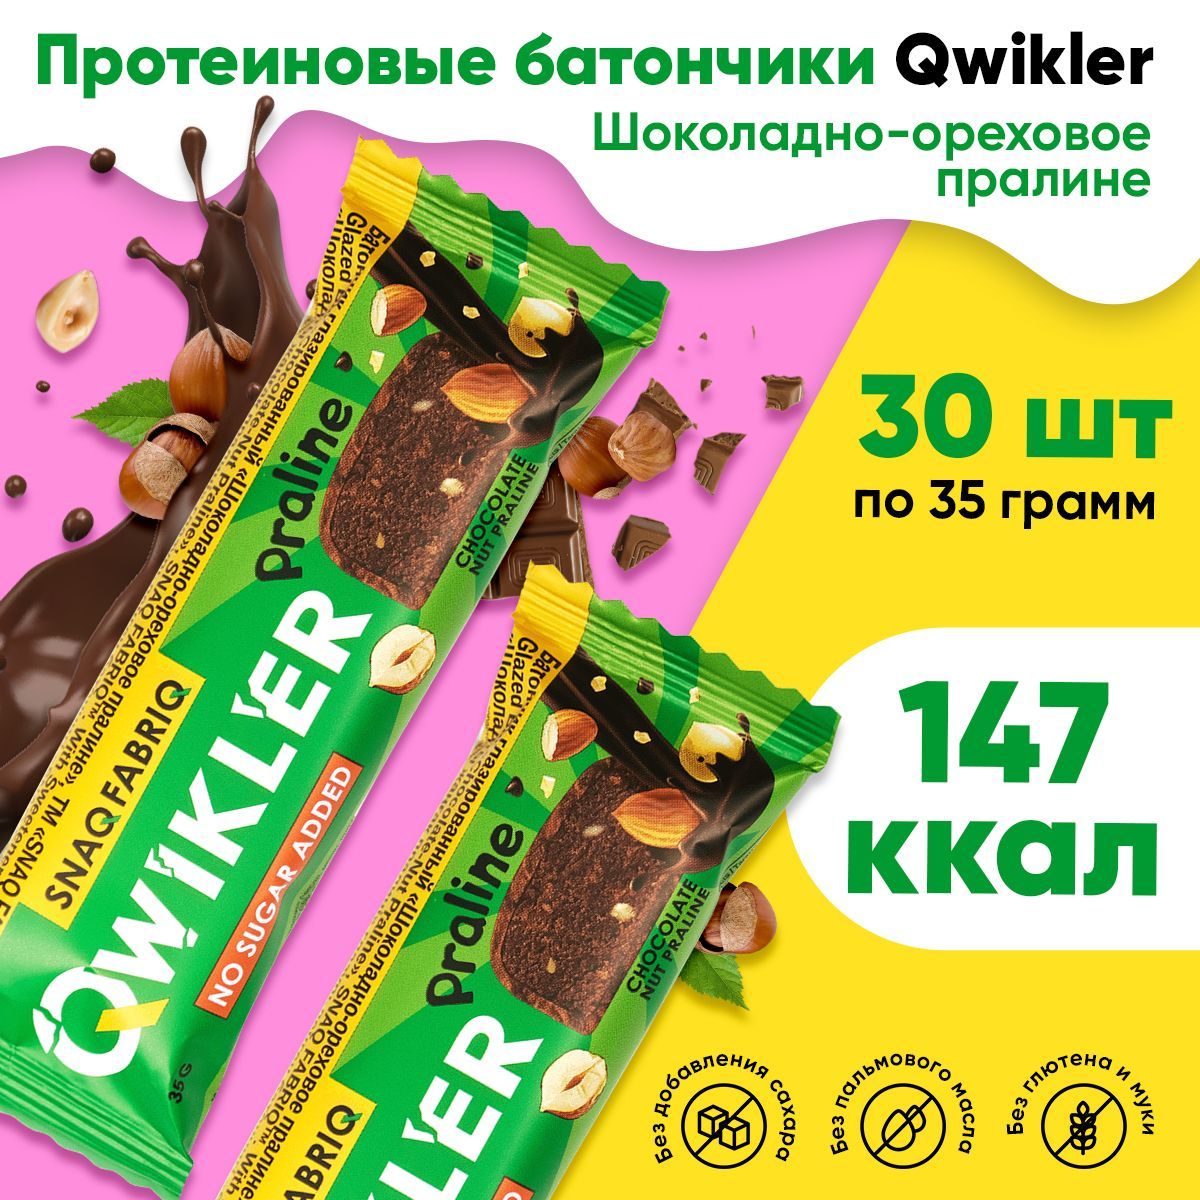 SNAQ FABRIQ | Snaq Fabriq QWIKLER, Протеиновый батончик без сахара, упаковка 30шт по 35г со вкусом шоколадно-орехового пралине, Низкокалорийные диетические сладости для похудения